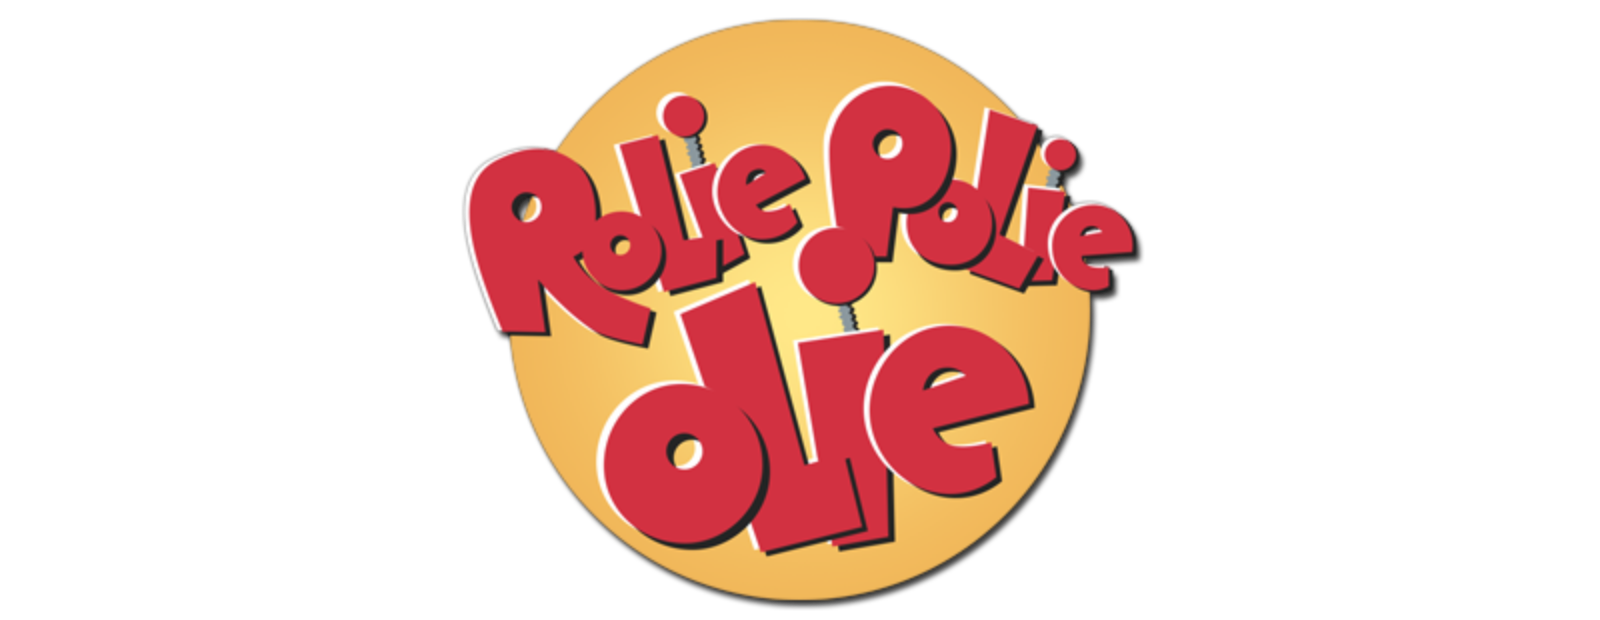 Rolie Polie Olie (9 DVDs Box Set)